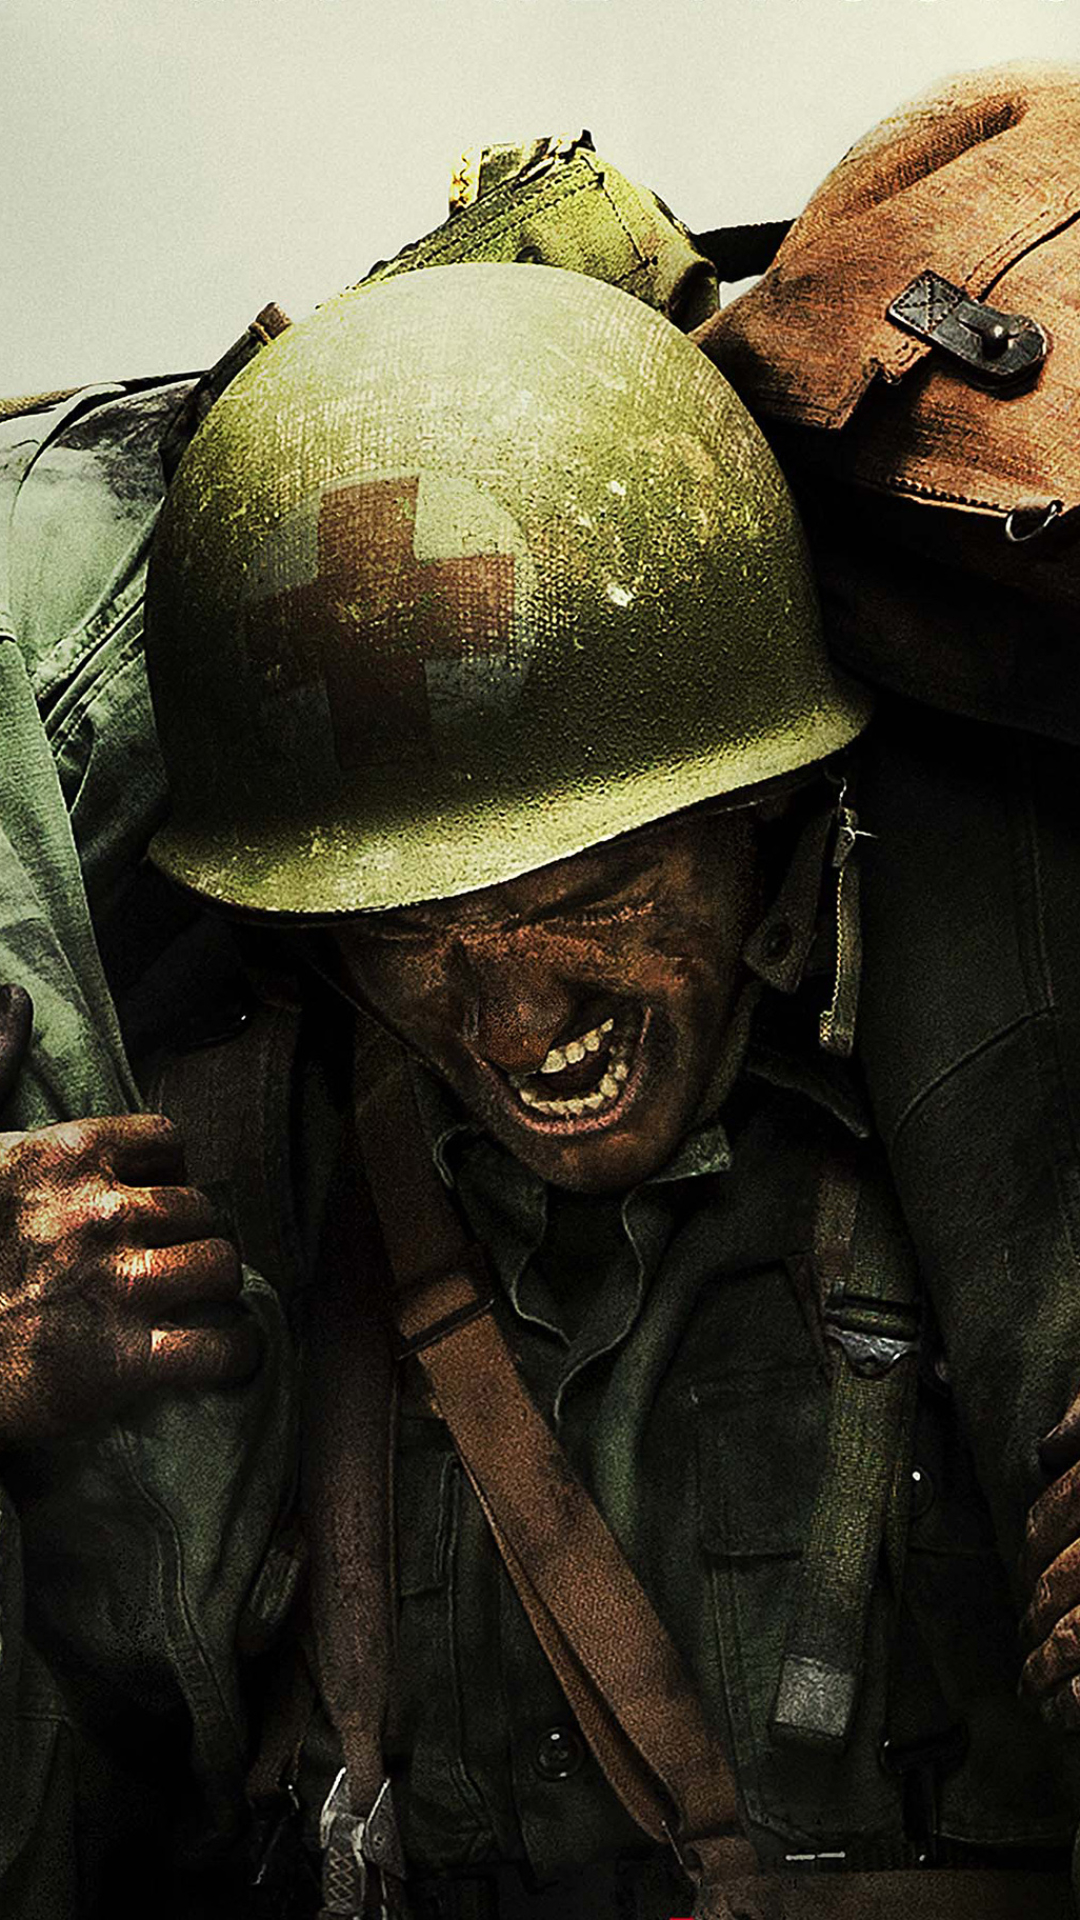 hacksaw ridge, movie, world war ii, soldier